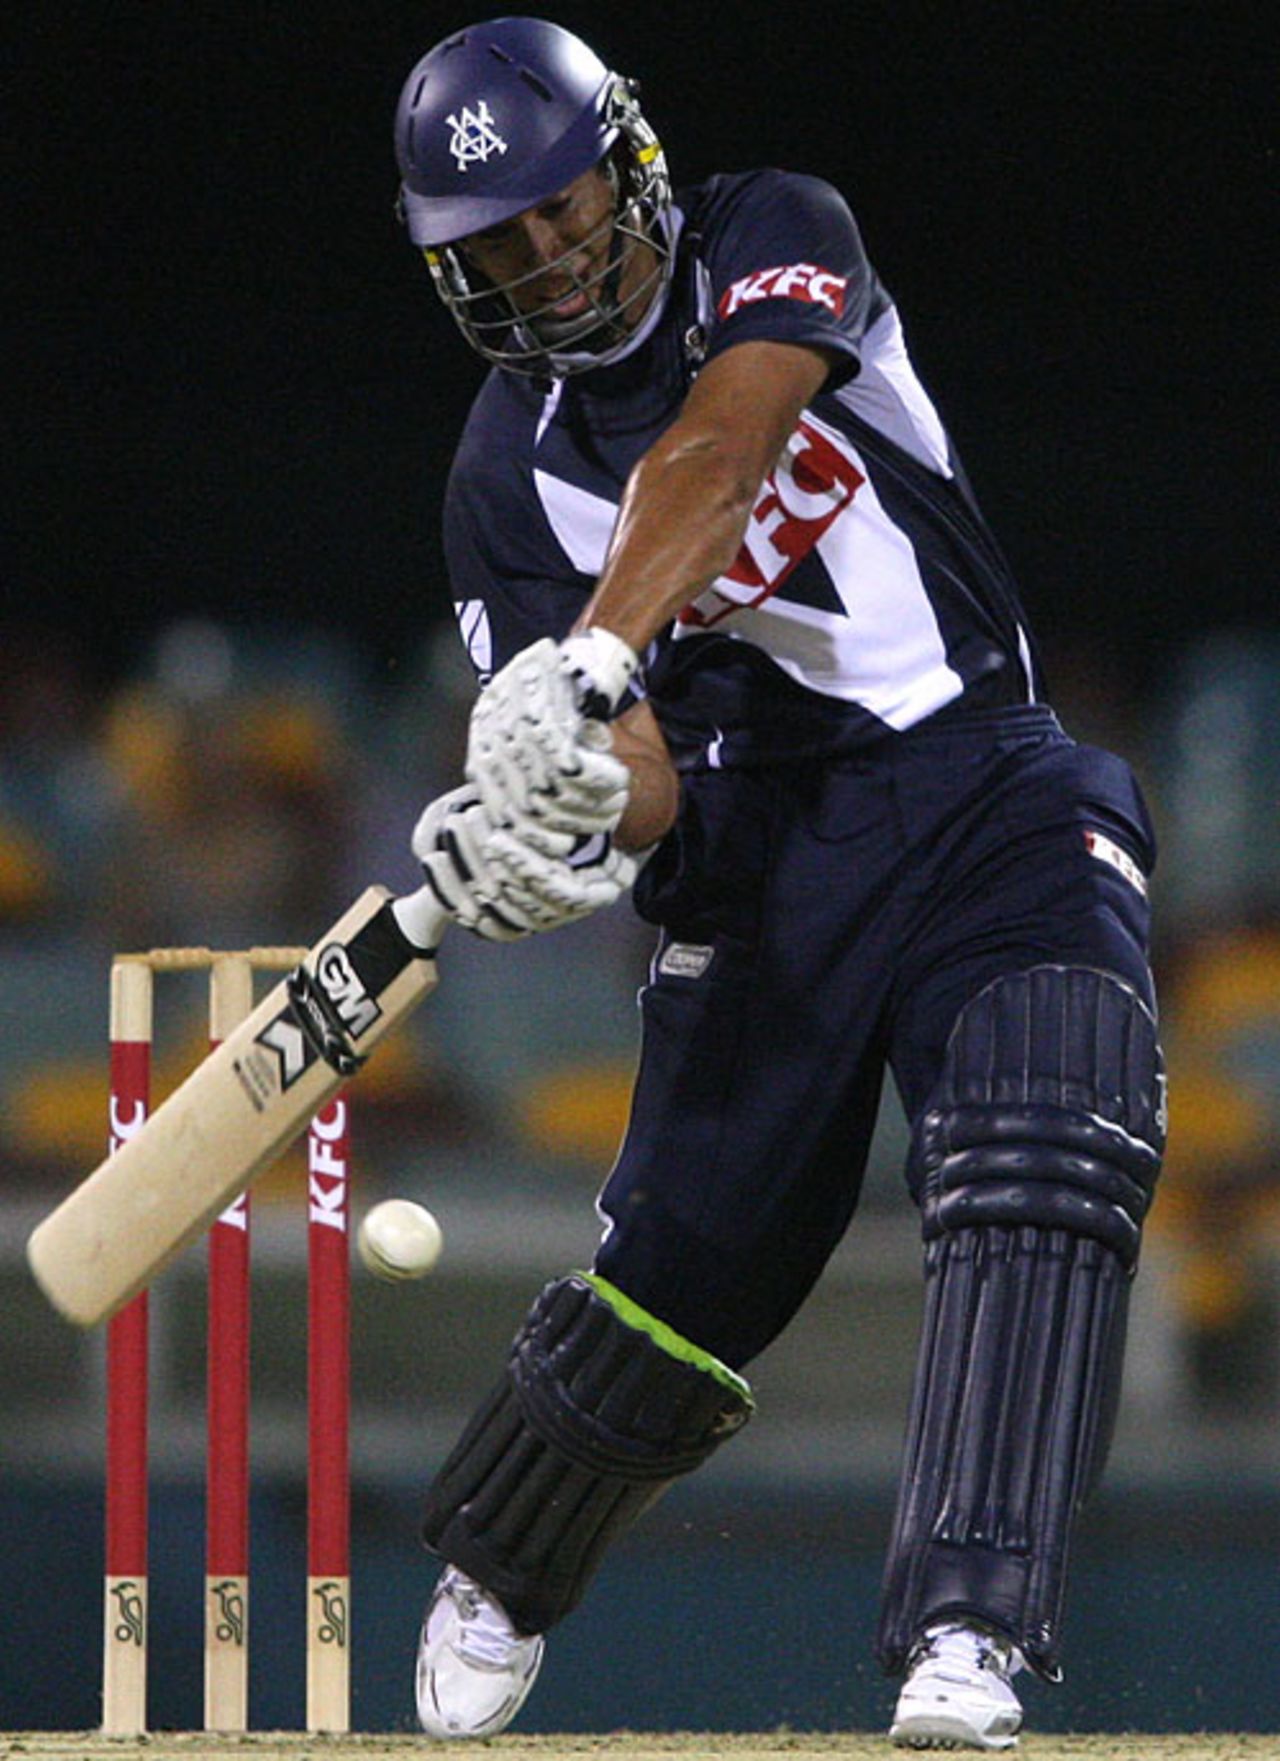 Ross Taylor gives it the full treatment, Queensland v Victoria, Twenty20 Big Bash, Brisbane, December 28, 2009